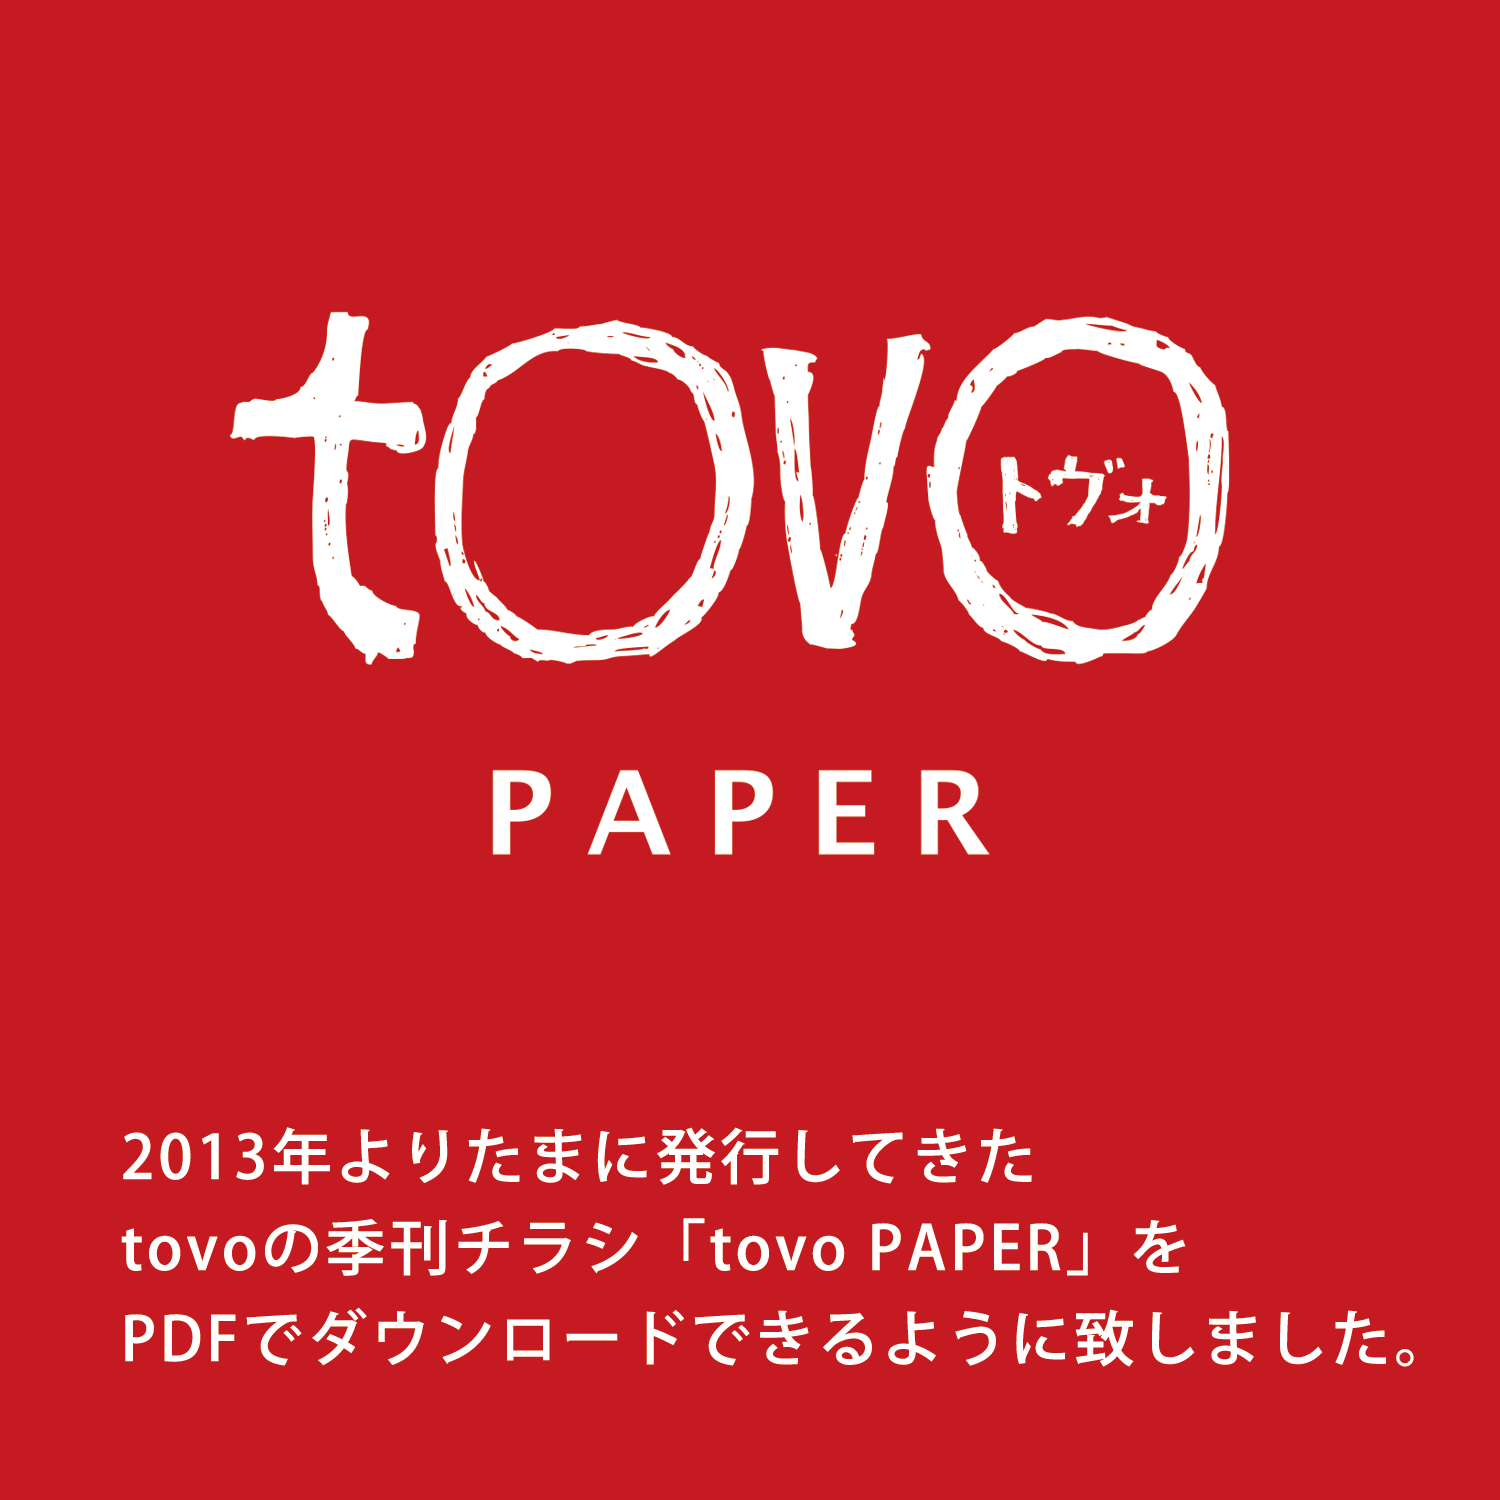 「tovo PAPER」ダウンロード